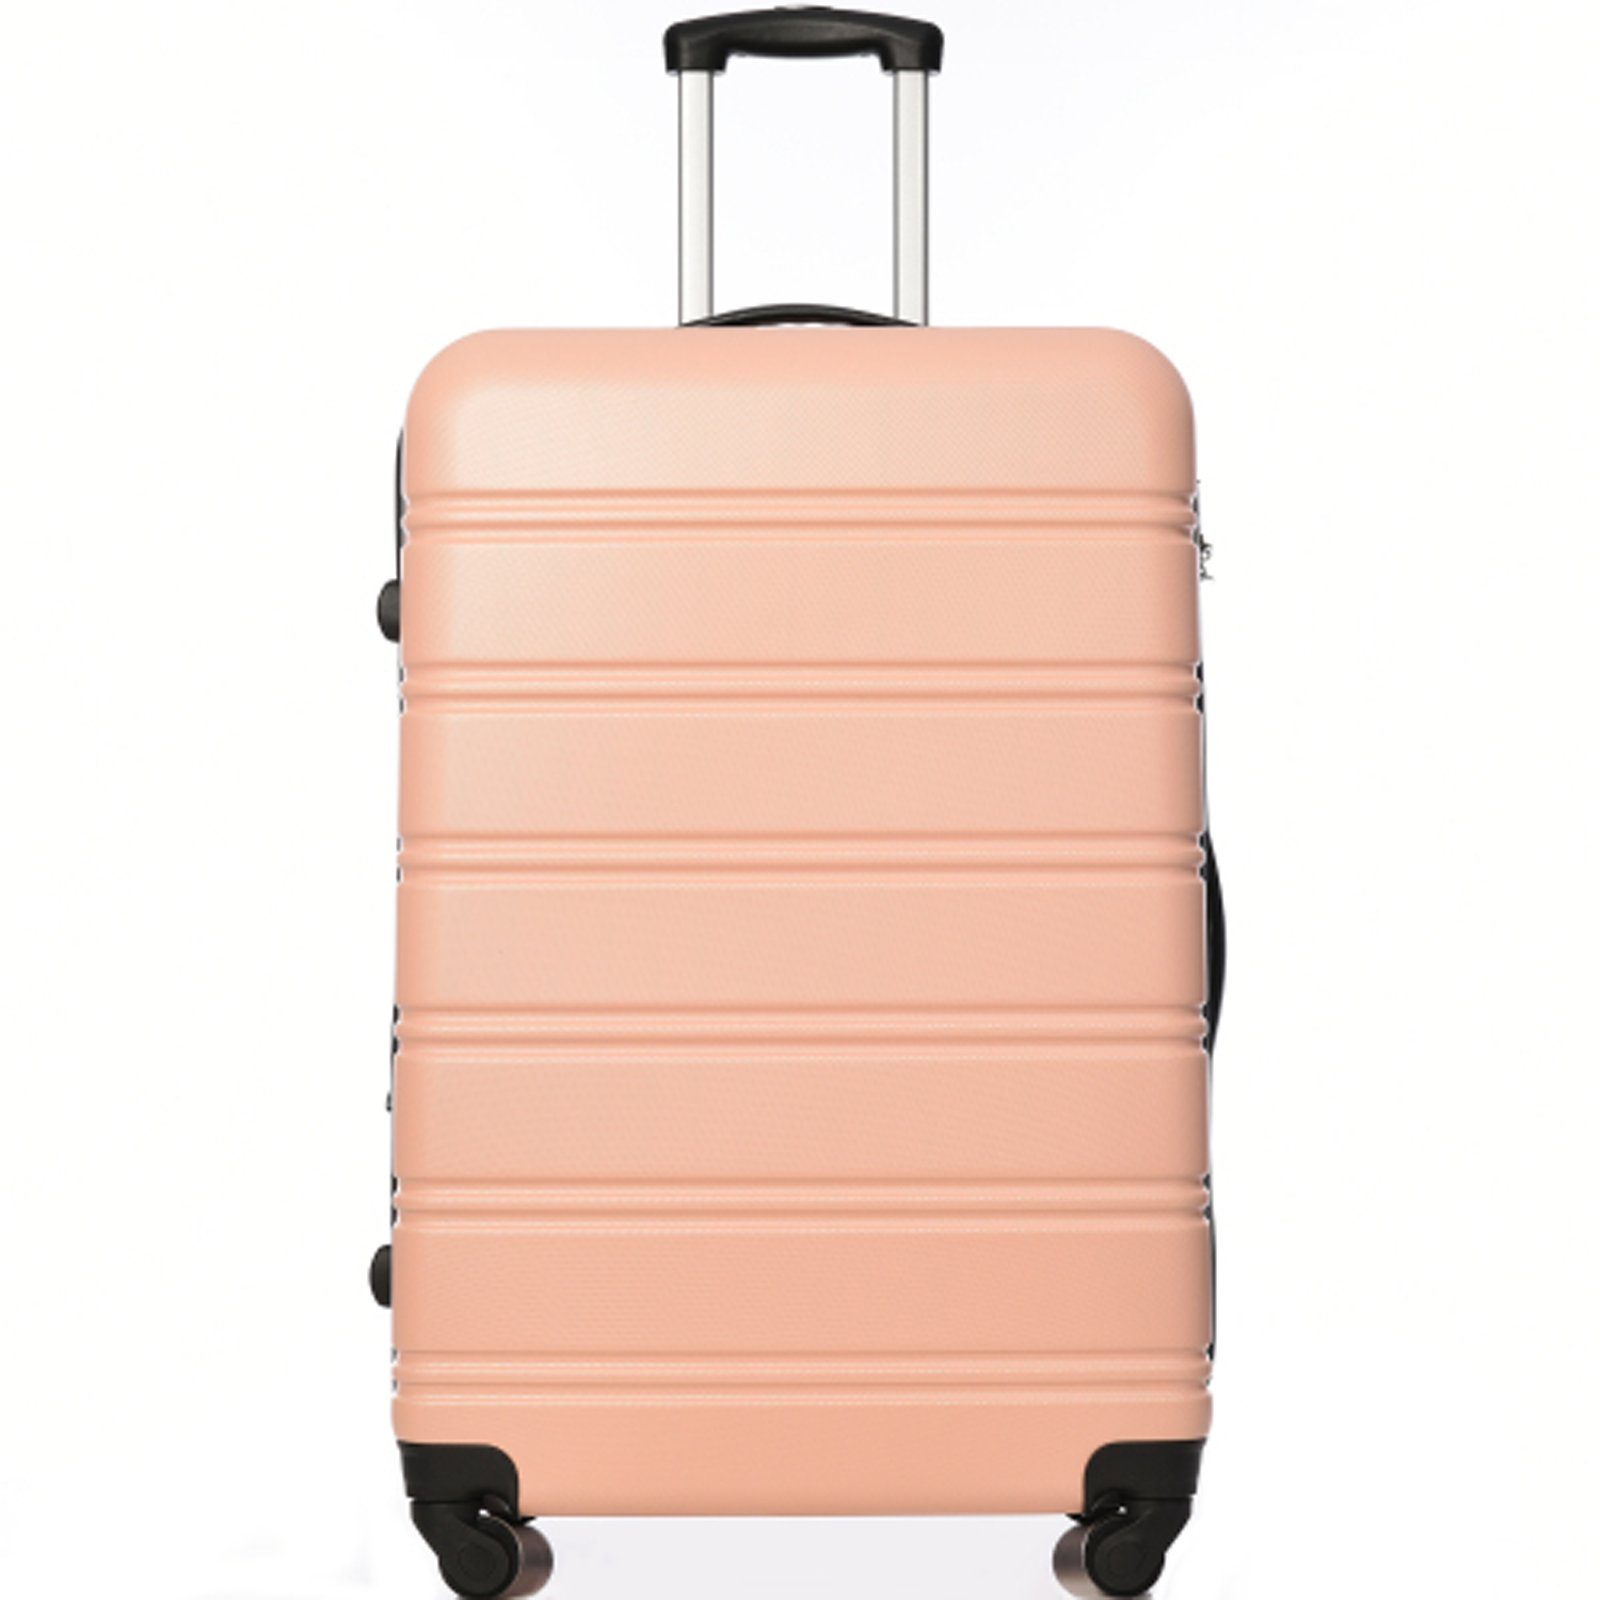 Koffer Trolley ABS-Material Leichtgewichtig, 4 Handgepäck 74.5x50.5x31.5 Handgepäcktrolley Hartschalenkoffer Reisekoffer Handgepäckkoffer aus Rollen, SEEZSSA